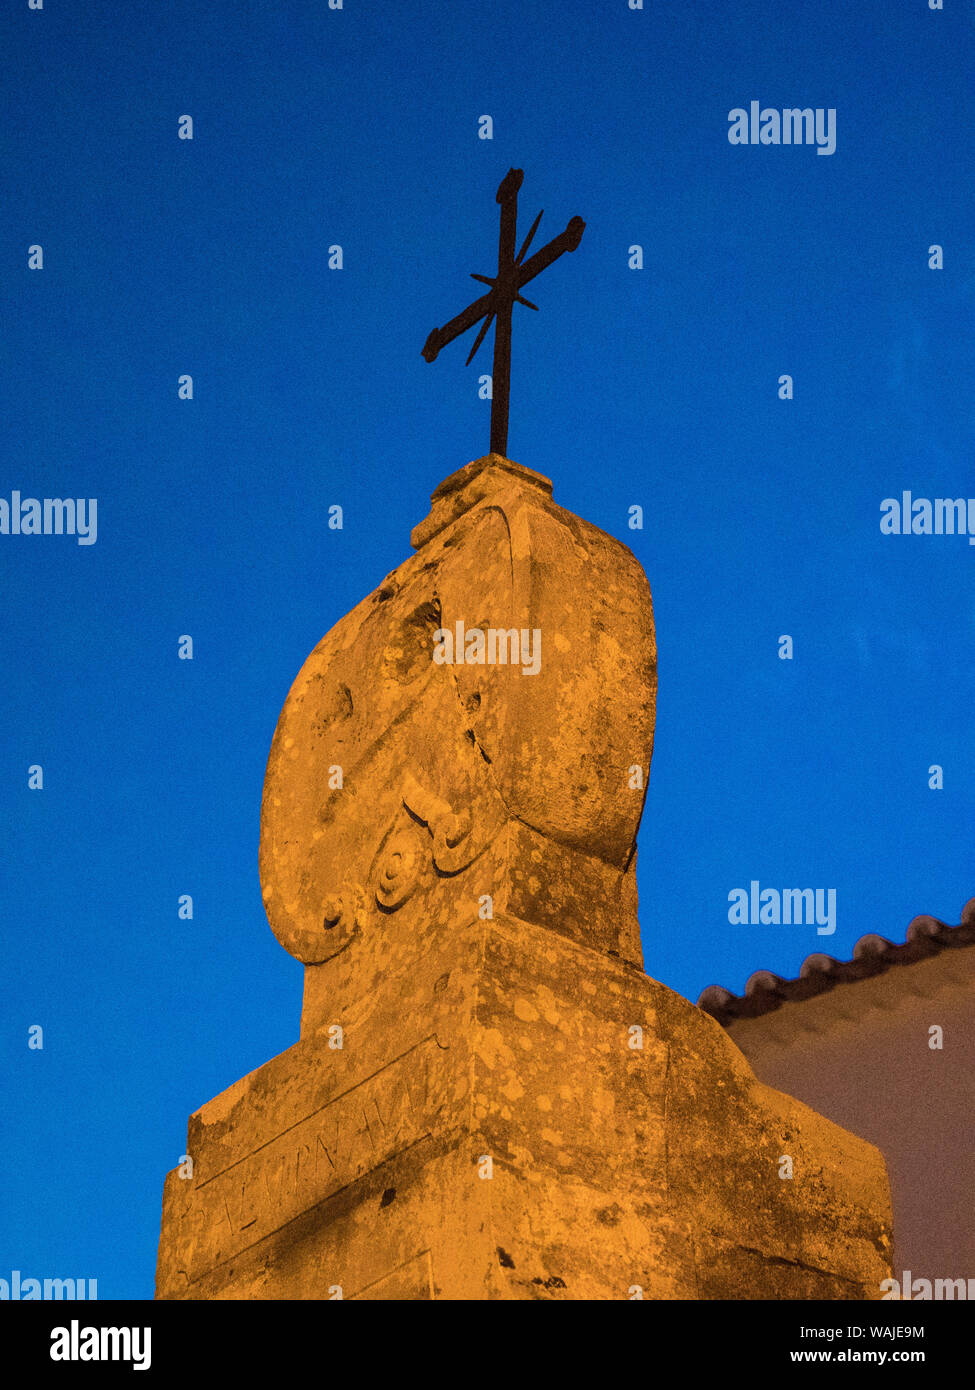 L'Europa, Portogallo, Obidos. Croce sulla cima di un vecchio edificio nella pittoresca cittadina medievale. Foto Stock